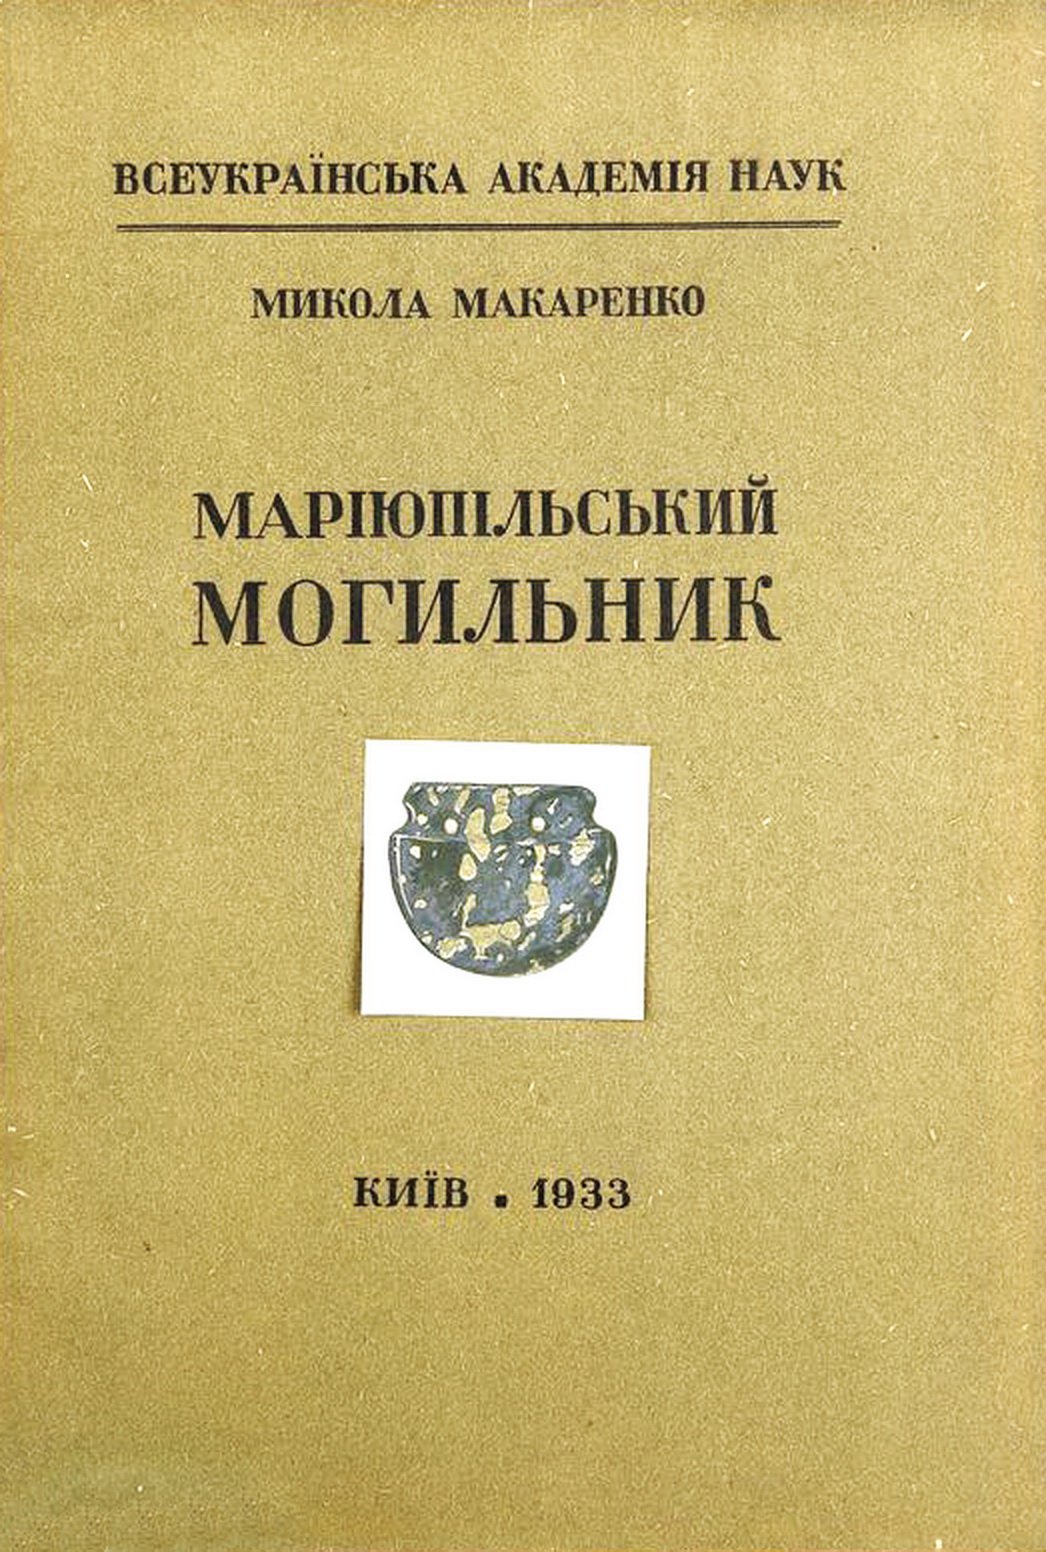 Обкладинка книжки “Маріюпольський могильник”, Київ, 1933 р.